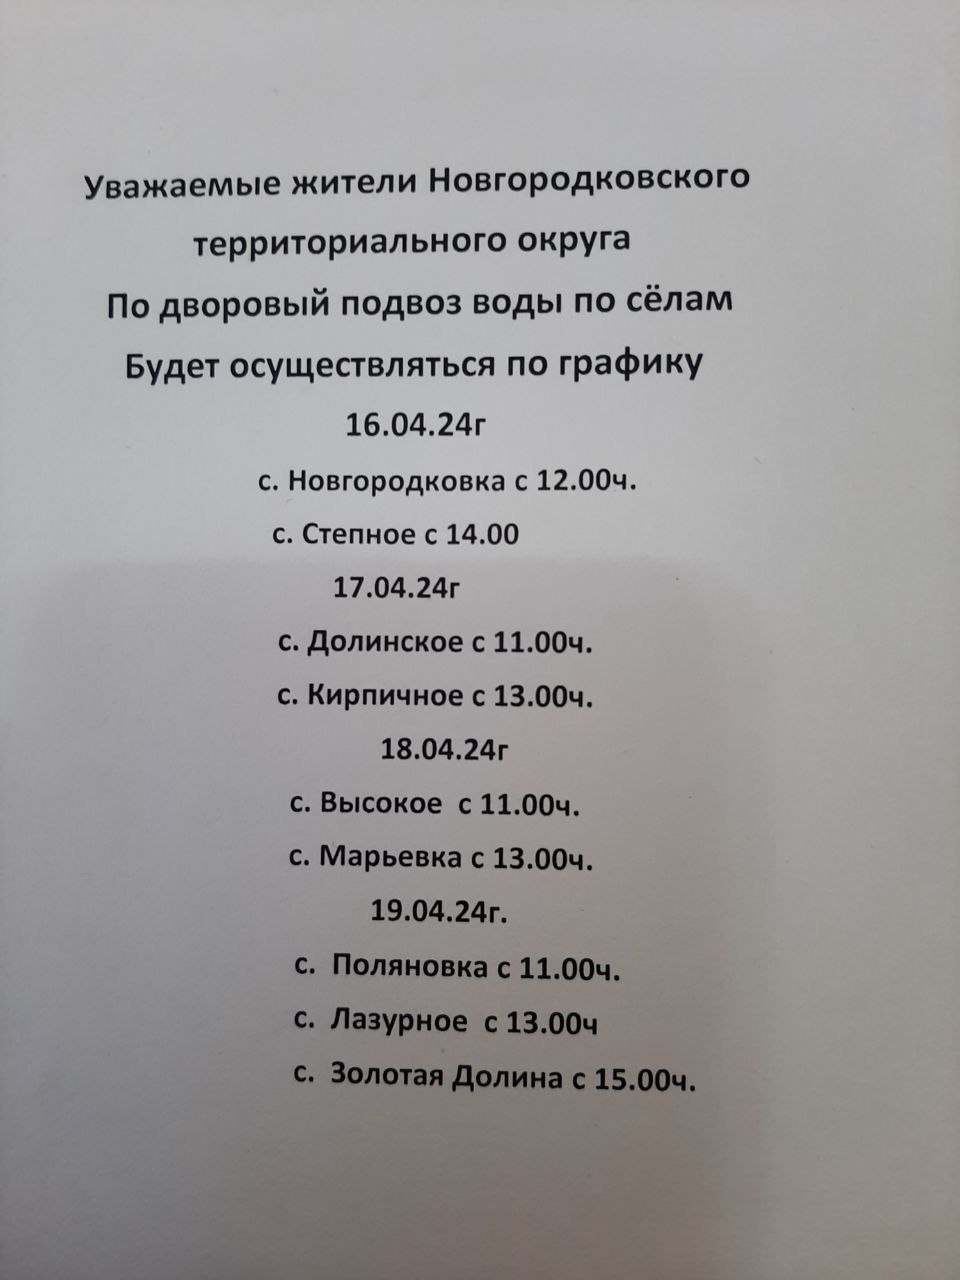 Уважаемые жители Новгородковского округа! Публикуем график подворового подвоза воды по сёлам:.